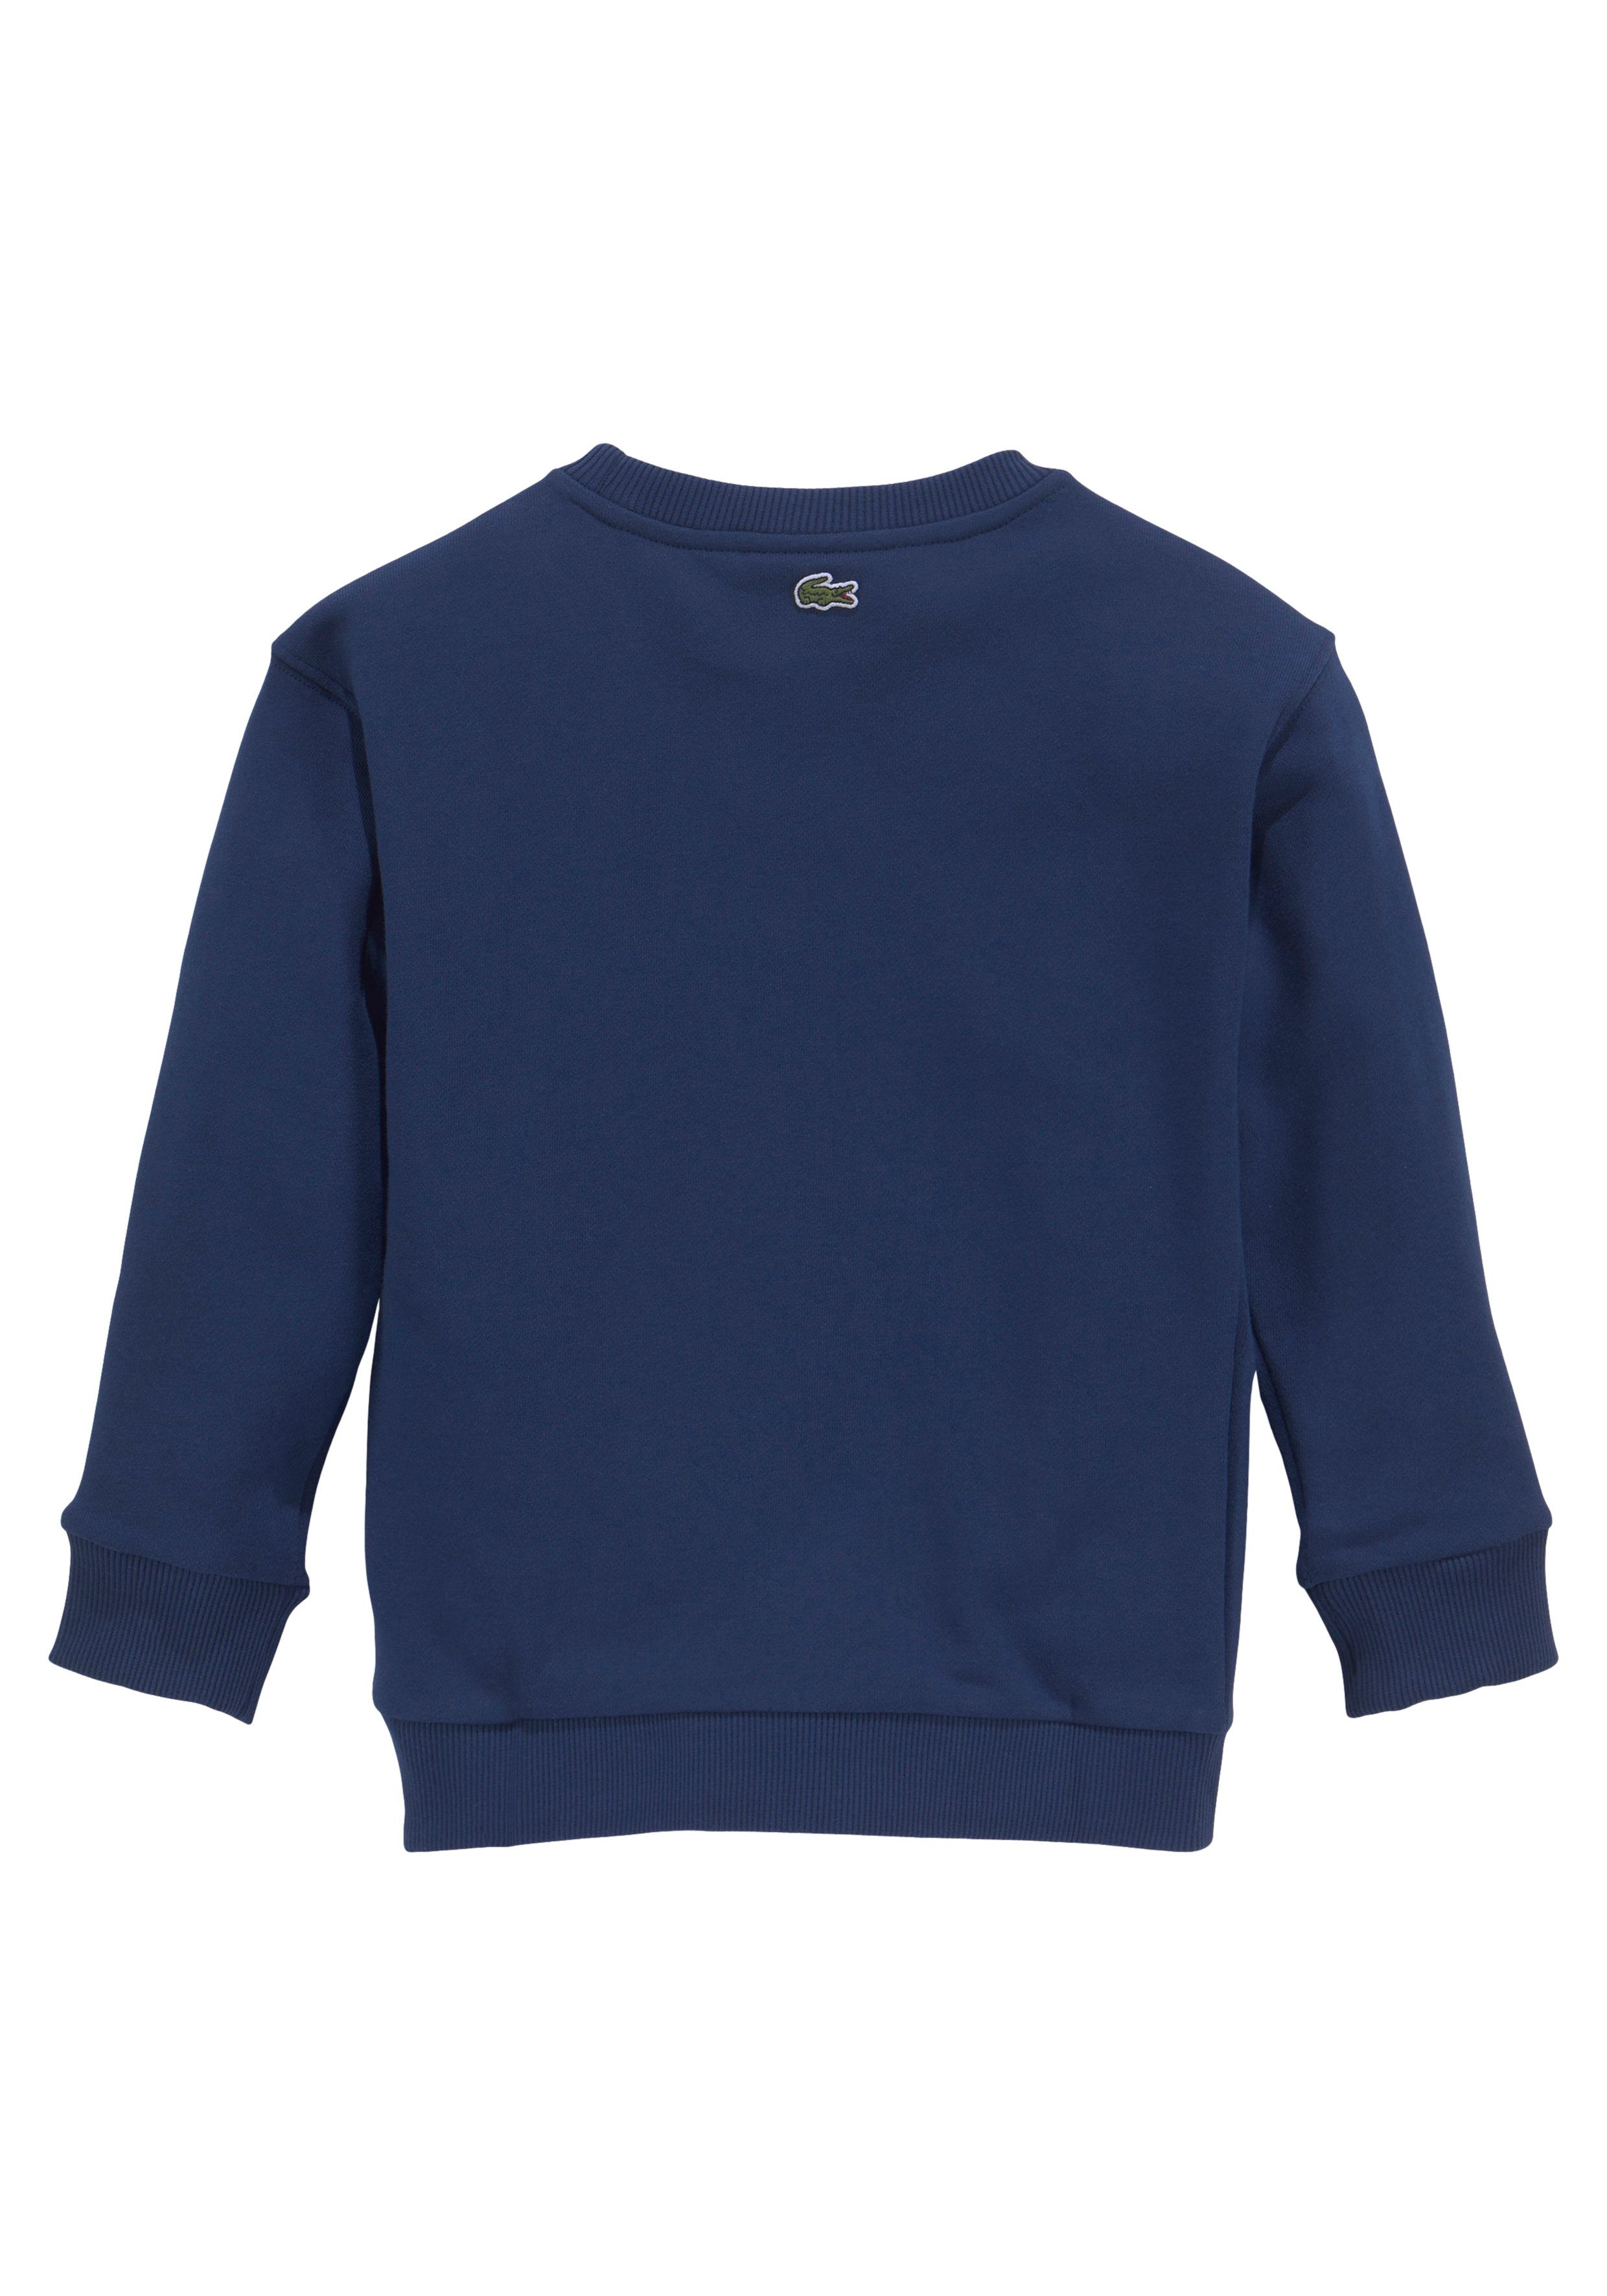 Lacoste Sweatshirt Kinder Kids Junior modernem blau der auf Labeldruck MiniMe,mit Brust